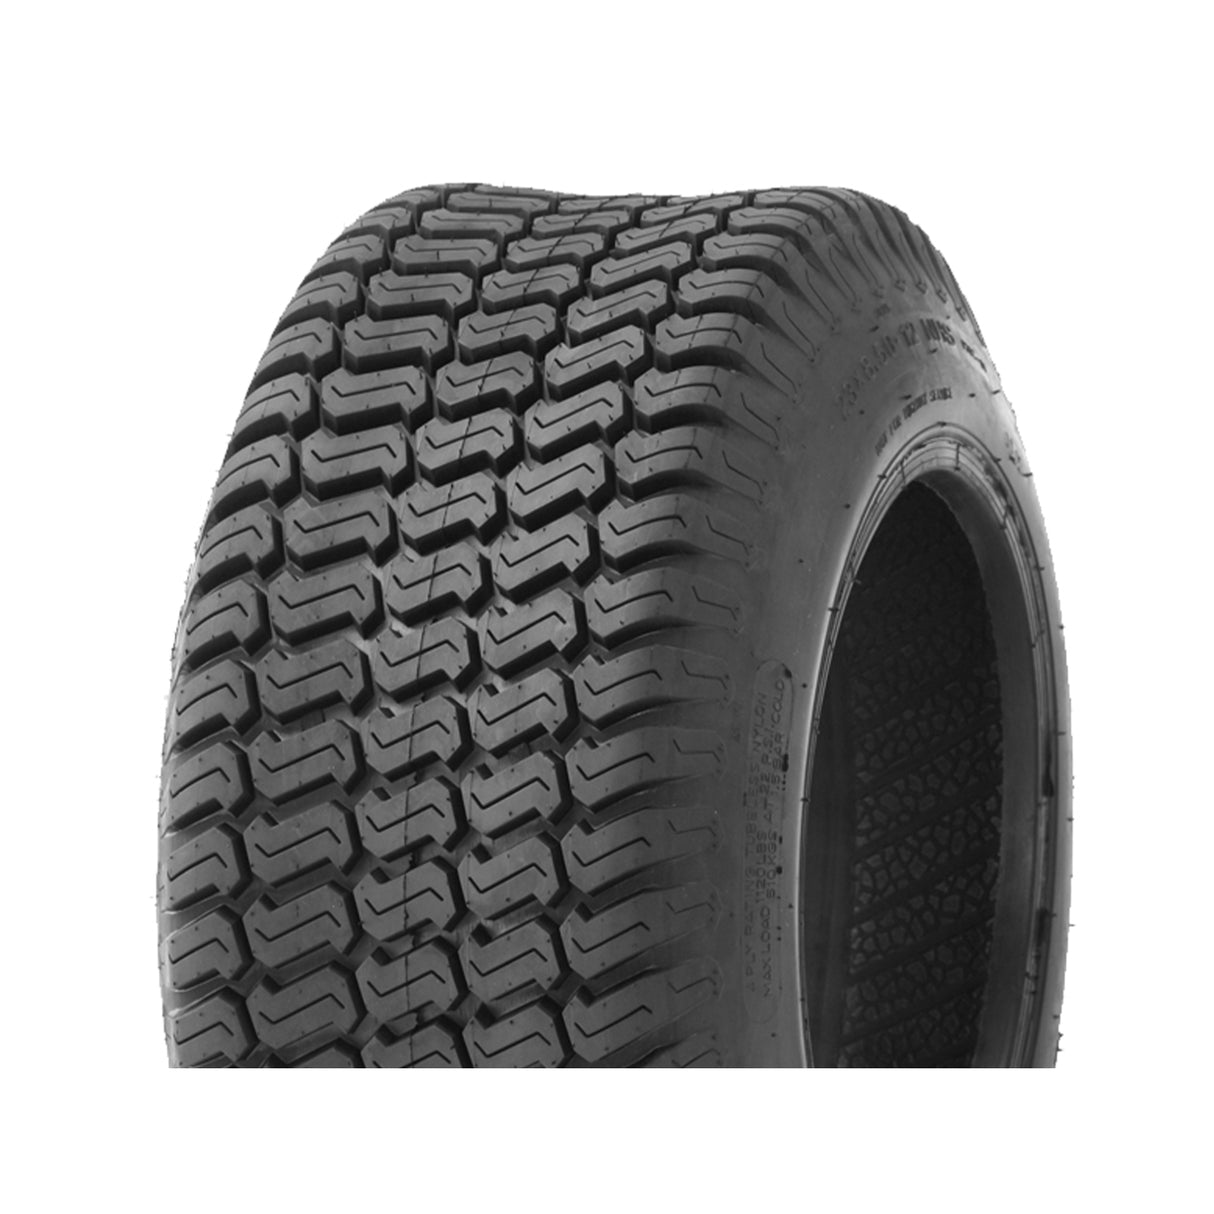 20x10.00-10 P332 (8 PLY) Wanda Reinforced Turf/Mower Tyre - GEO Tyres Online